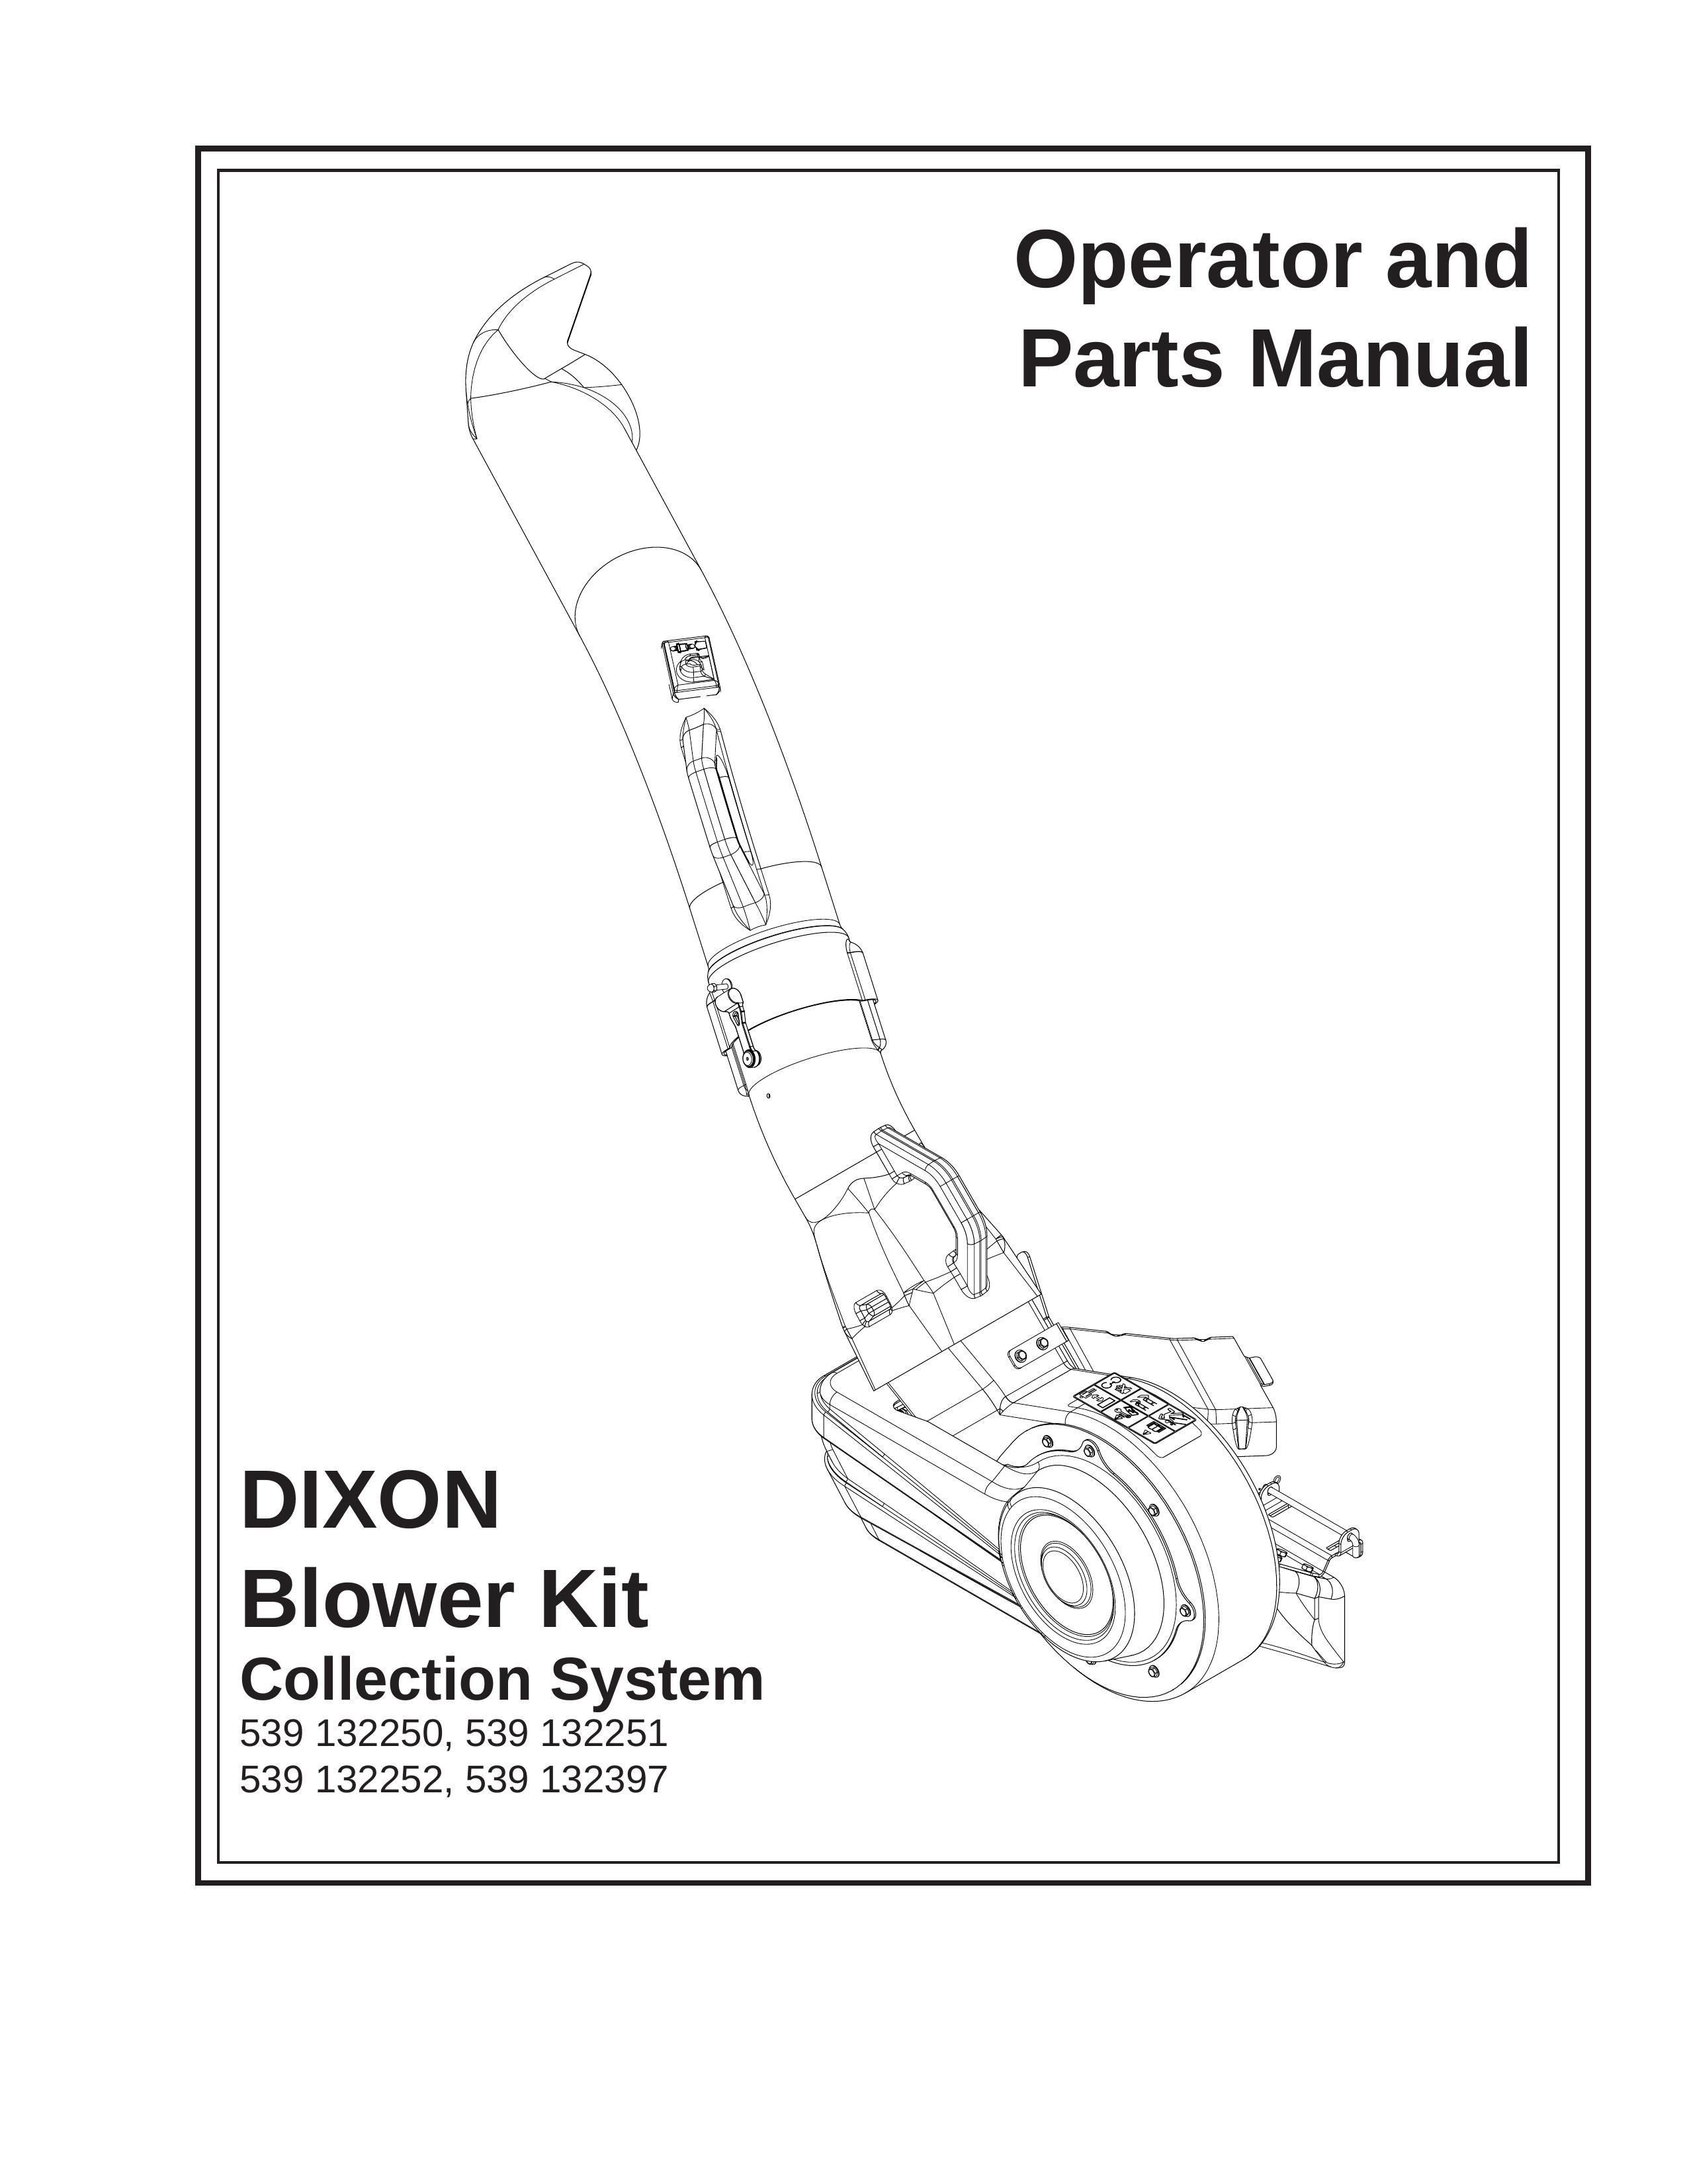 Dixon 539 132251 Blower User Manual